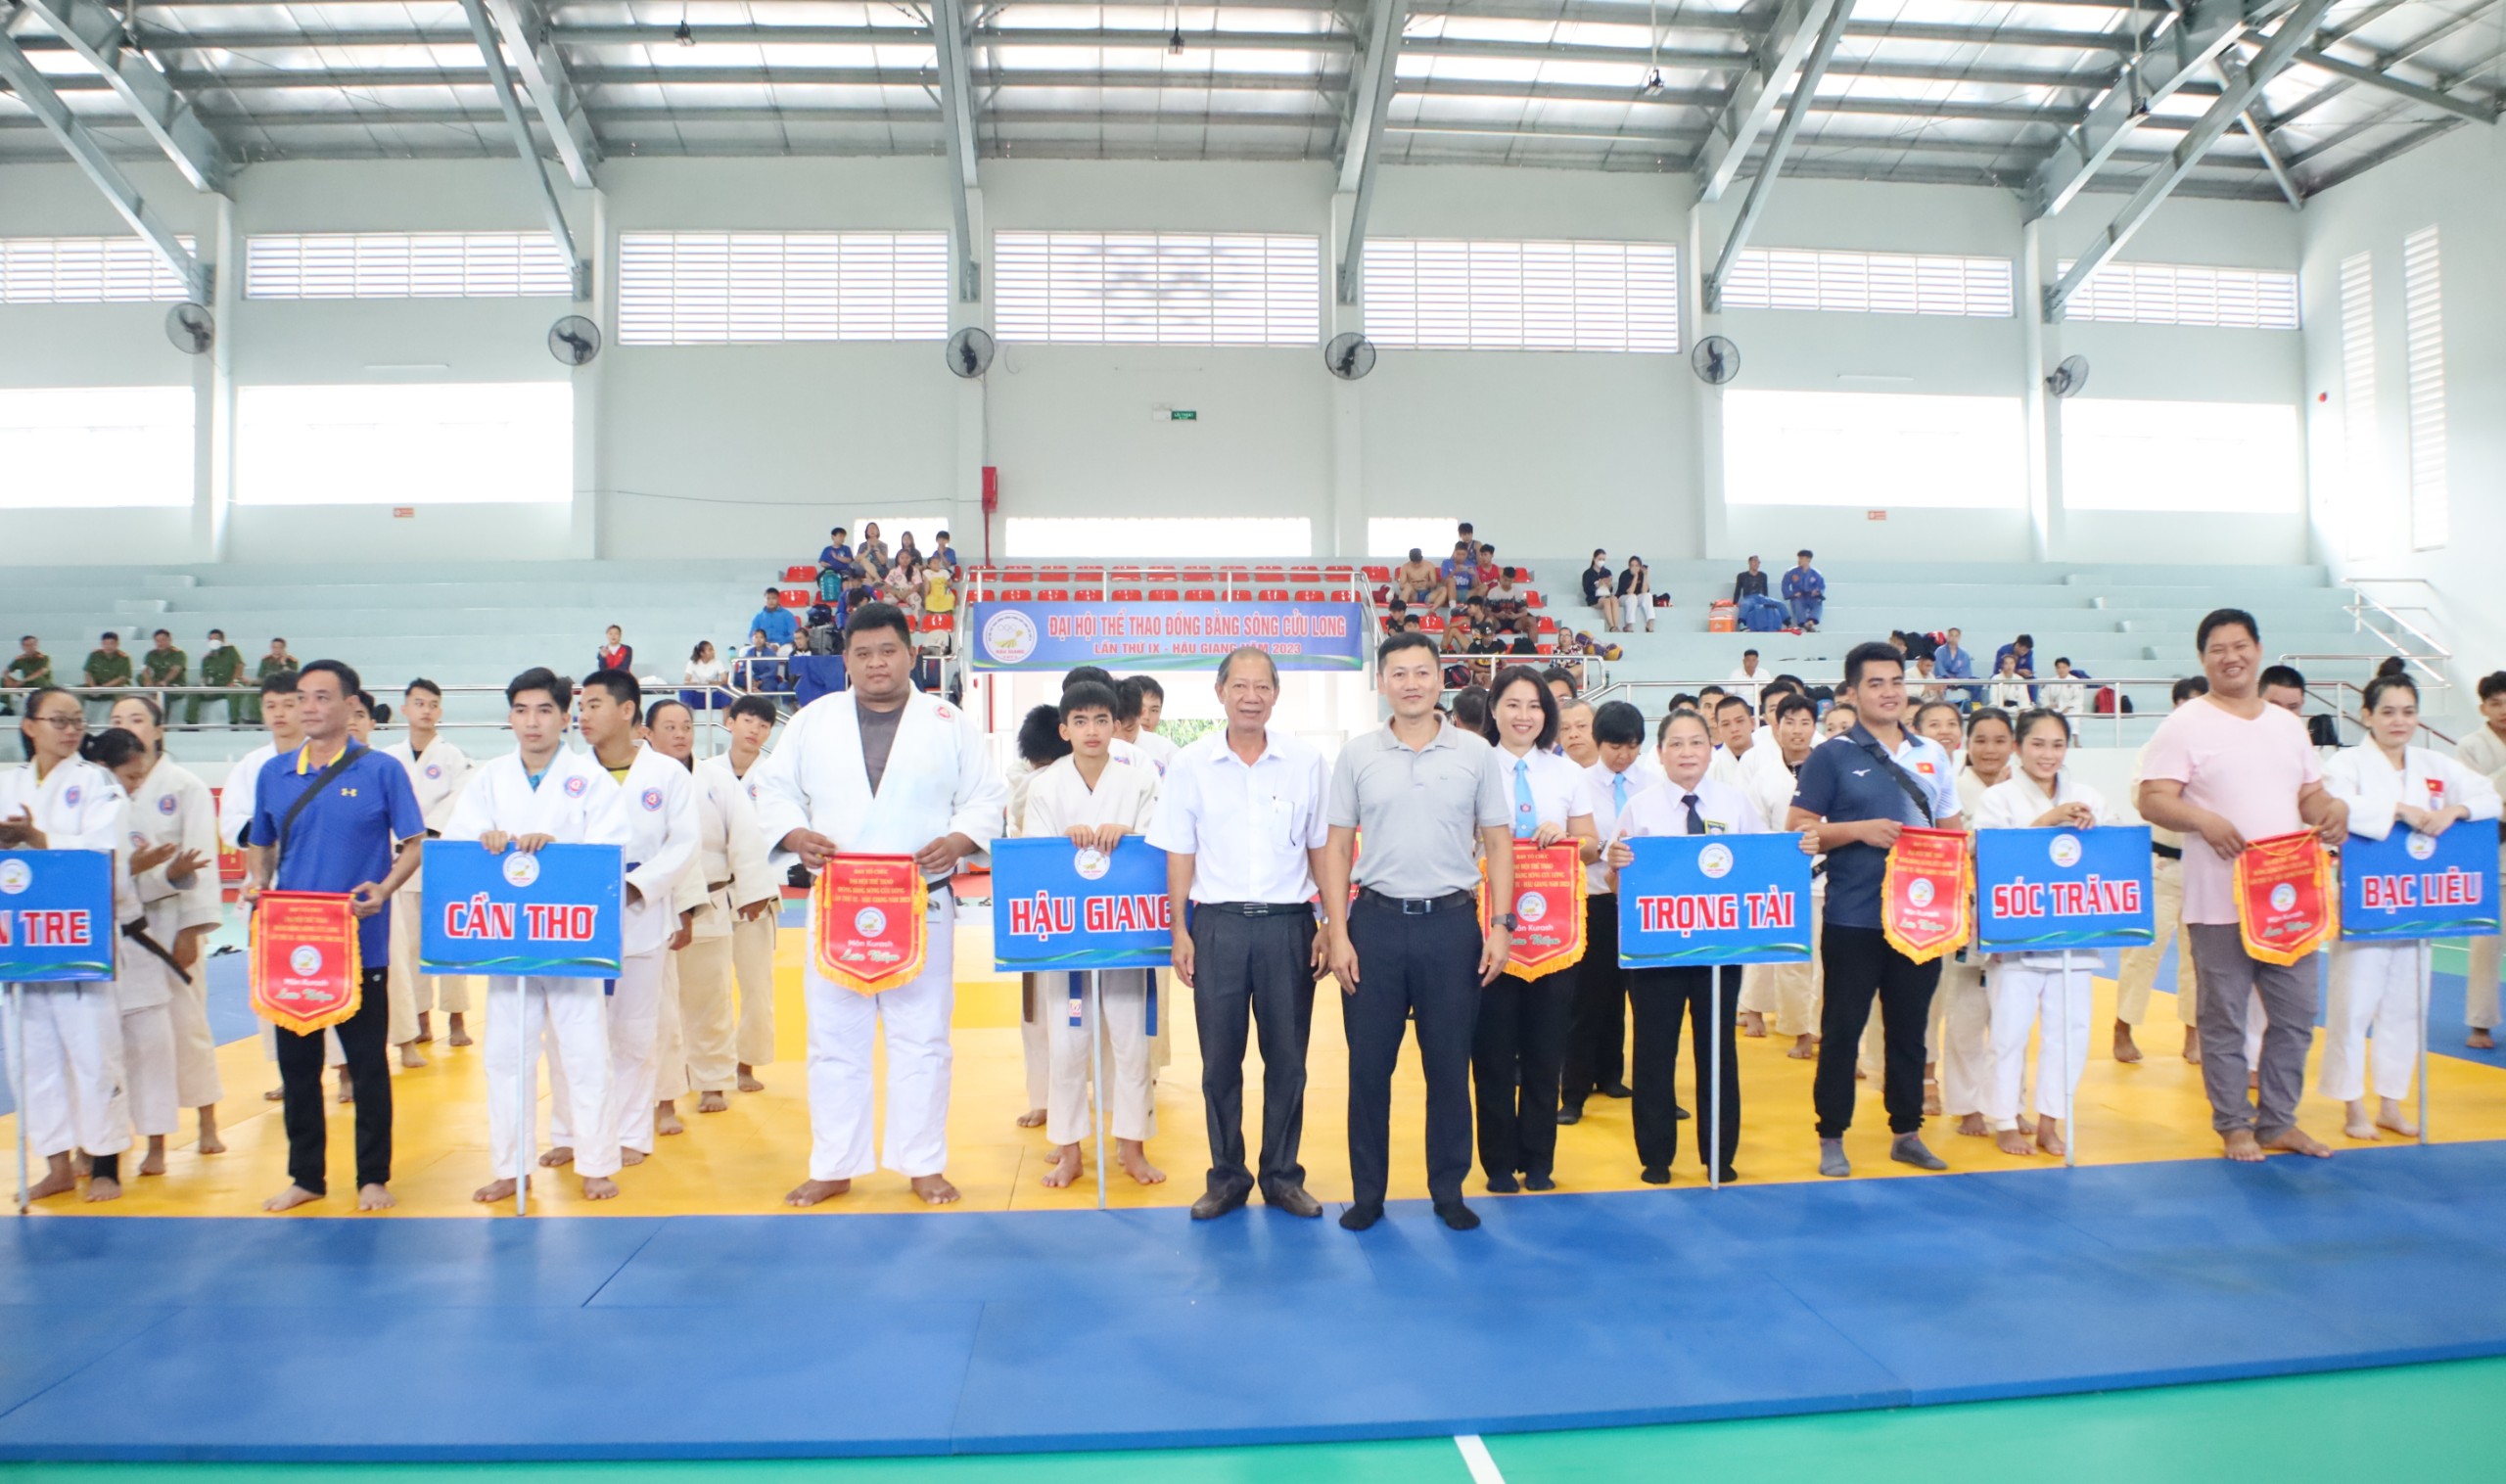 Ông Nguyễn Hữu An - Phụ trách môn Judo, Kurash - Cục TDTT và ông Bùi Việt Hà – Phó Chủ tịch UBND TP. Ngã Bảy tặng cờ lưu niệm cho các đoàn tham dự giải.